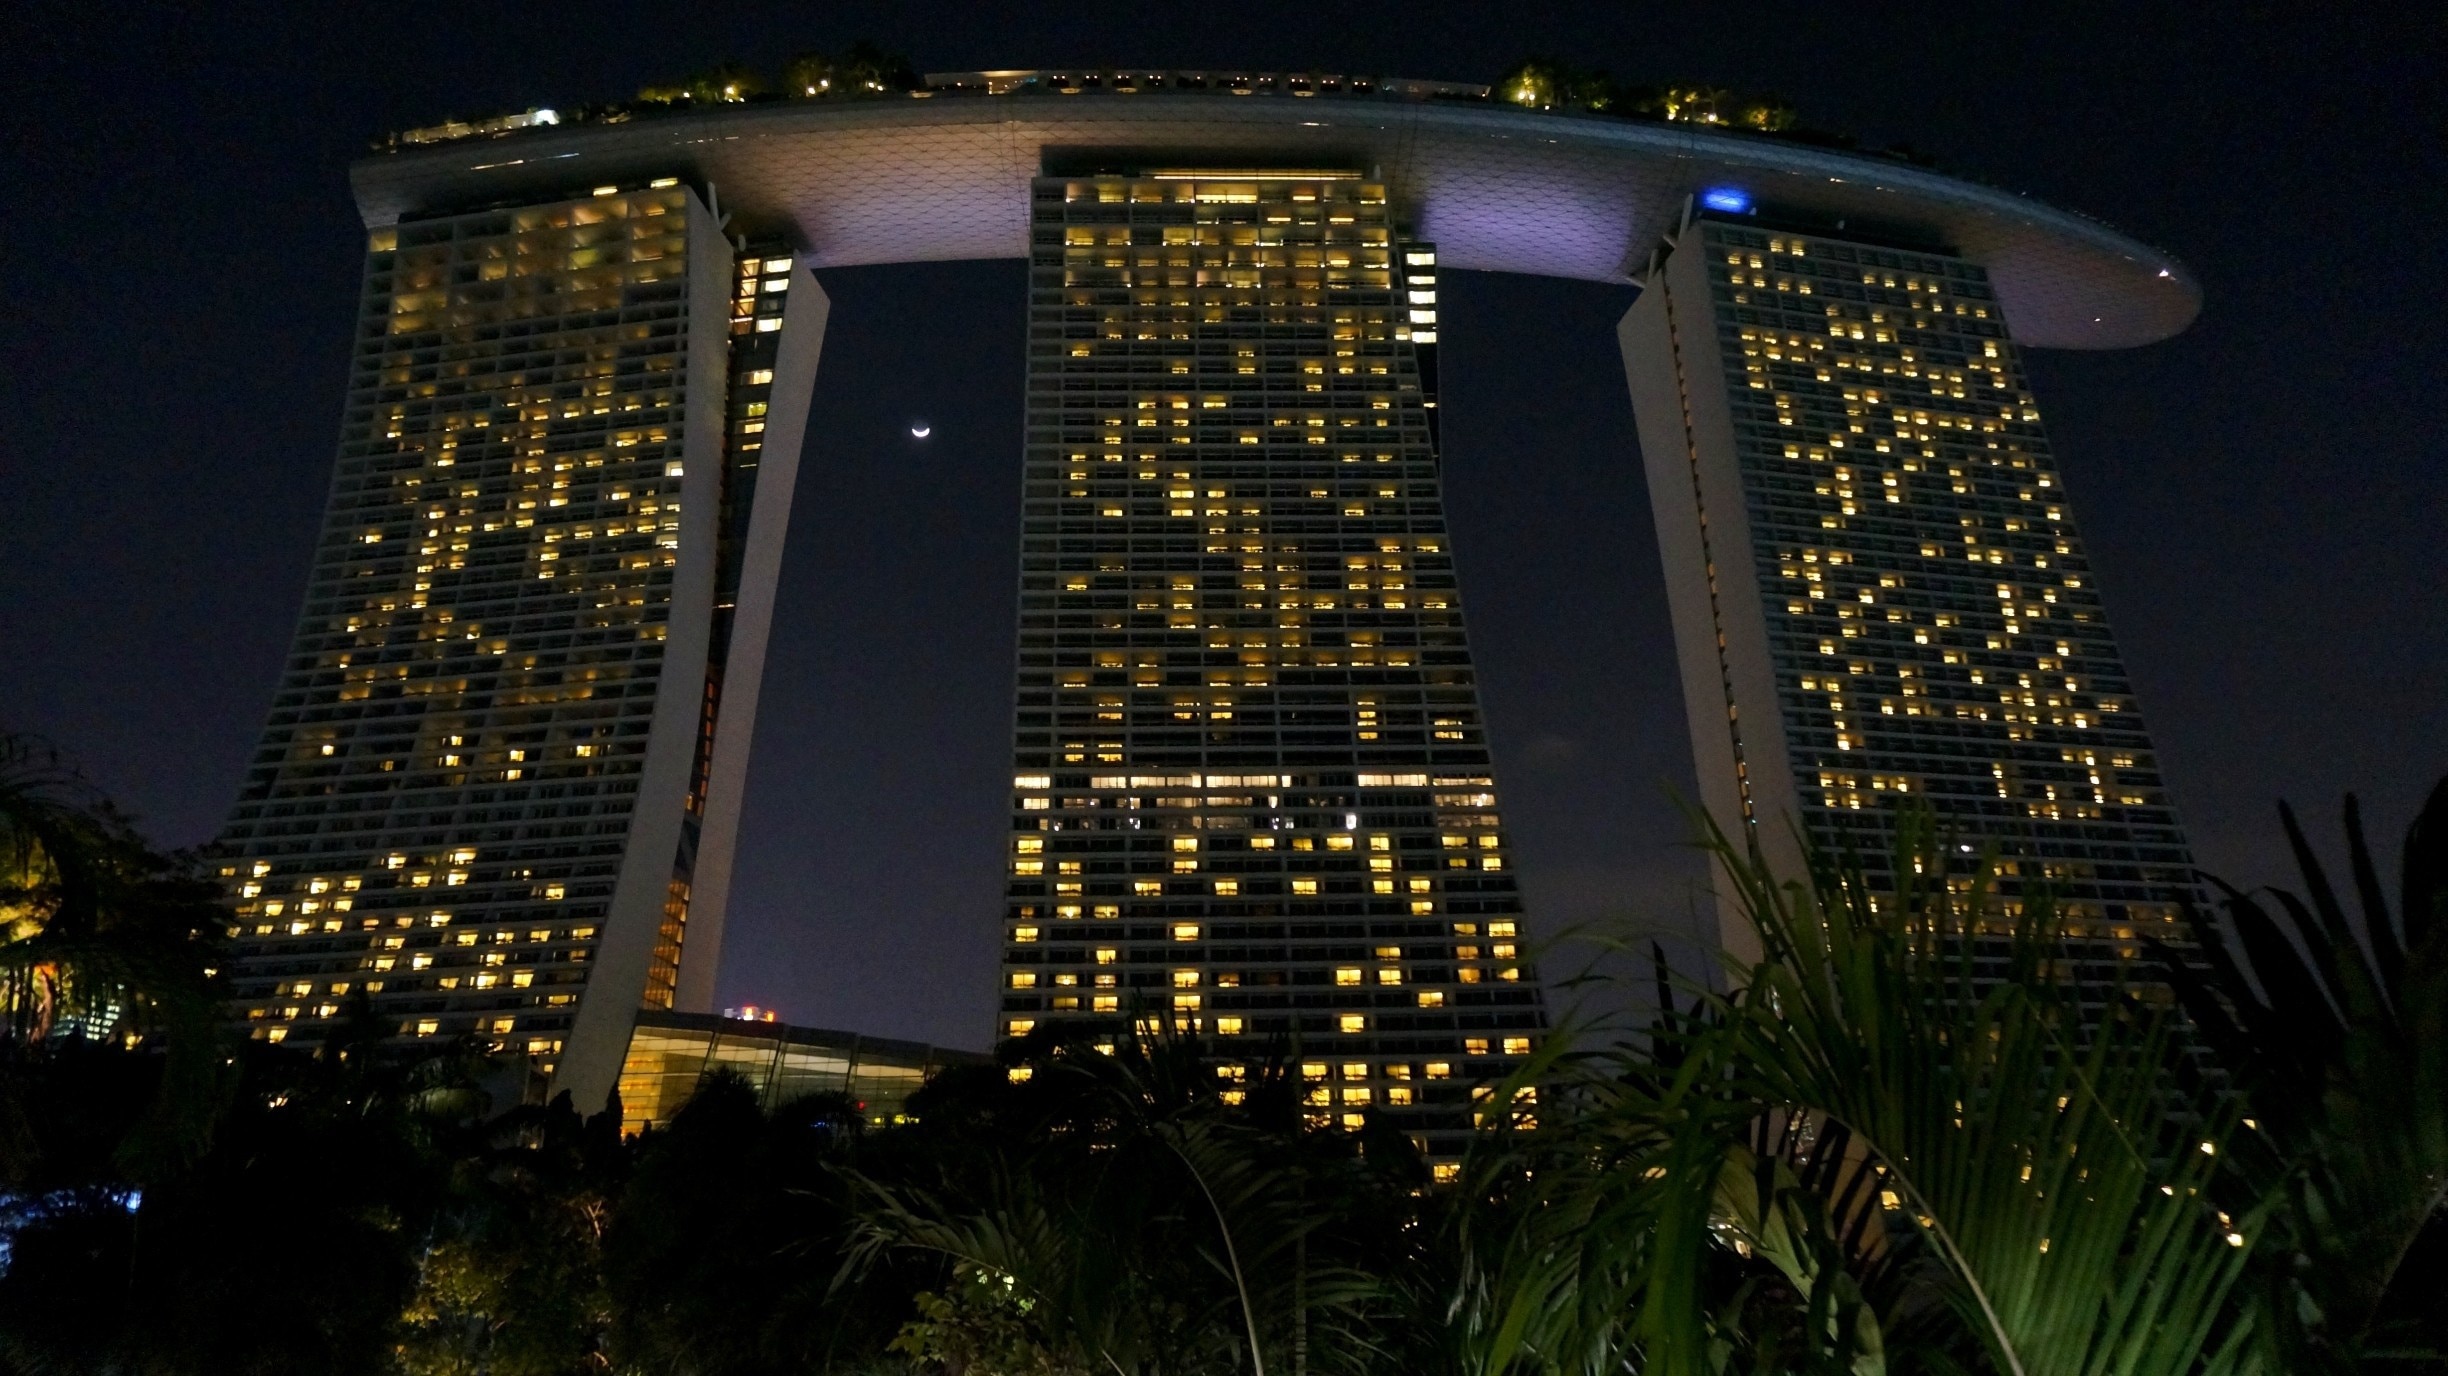 Marina Bay Sands Complex - The Skyscraper Center